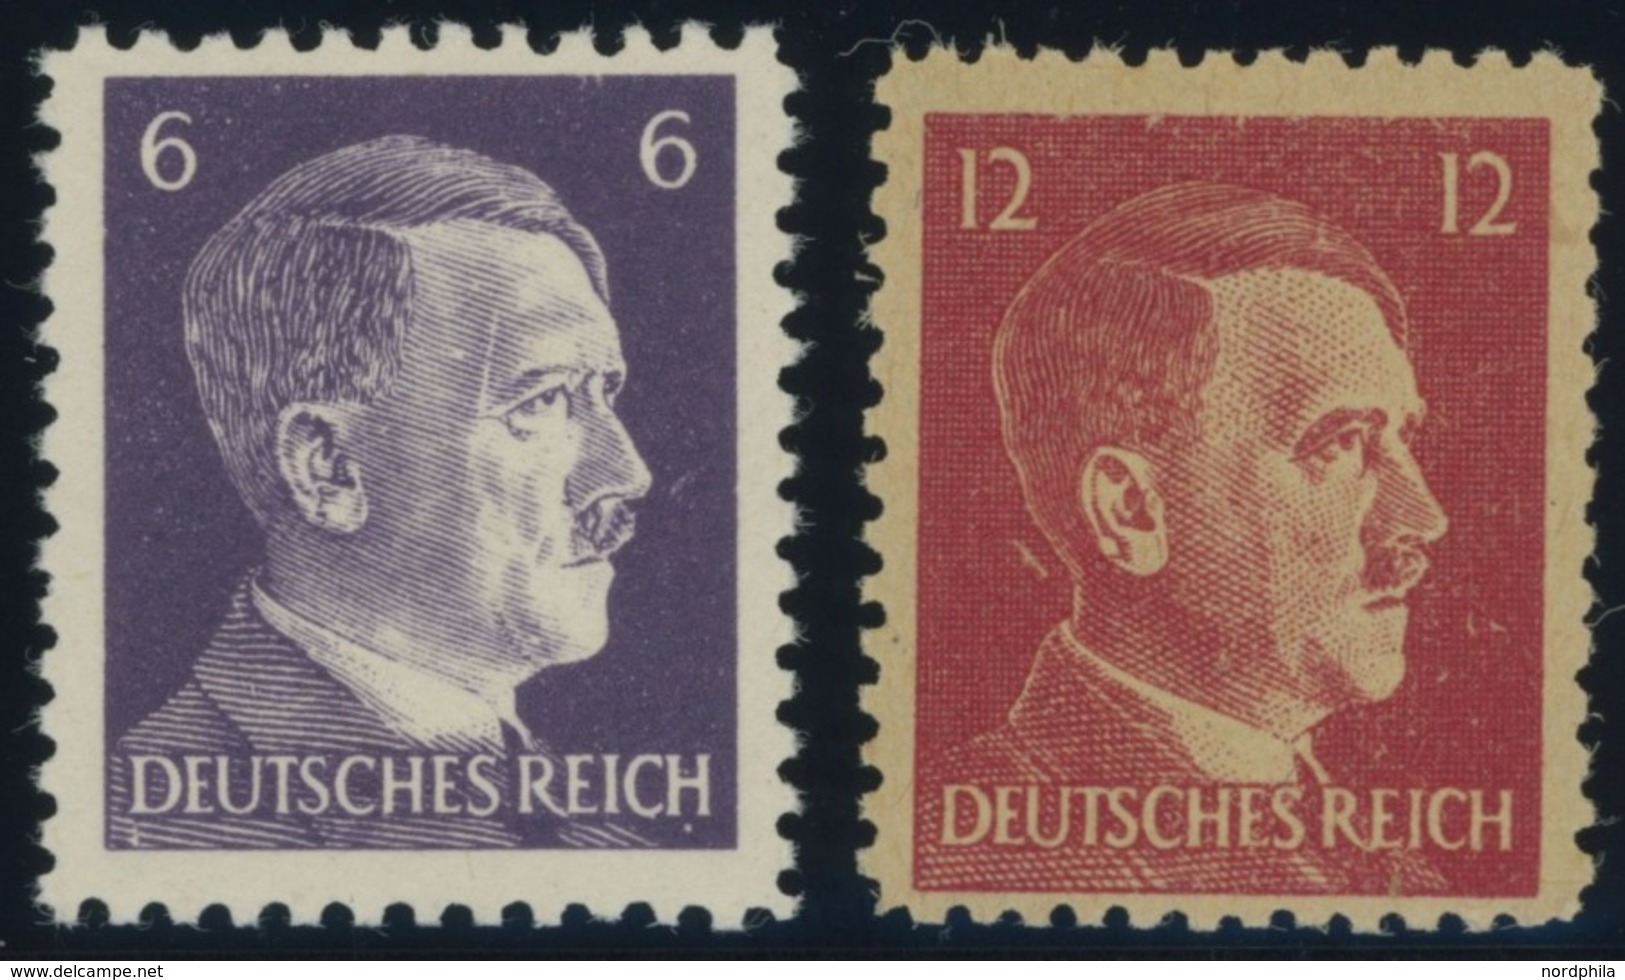 PROPAGANDAFÄLSCHUNGEN 15/6 **, Amerikanische Propagandamarken Für Deutschland: 6 Pf. Violett Und 12 Pf. Karmin Hitler, P - Occupation 1938-45